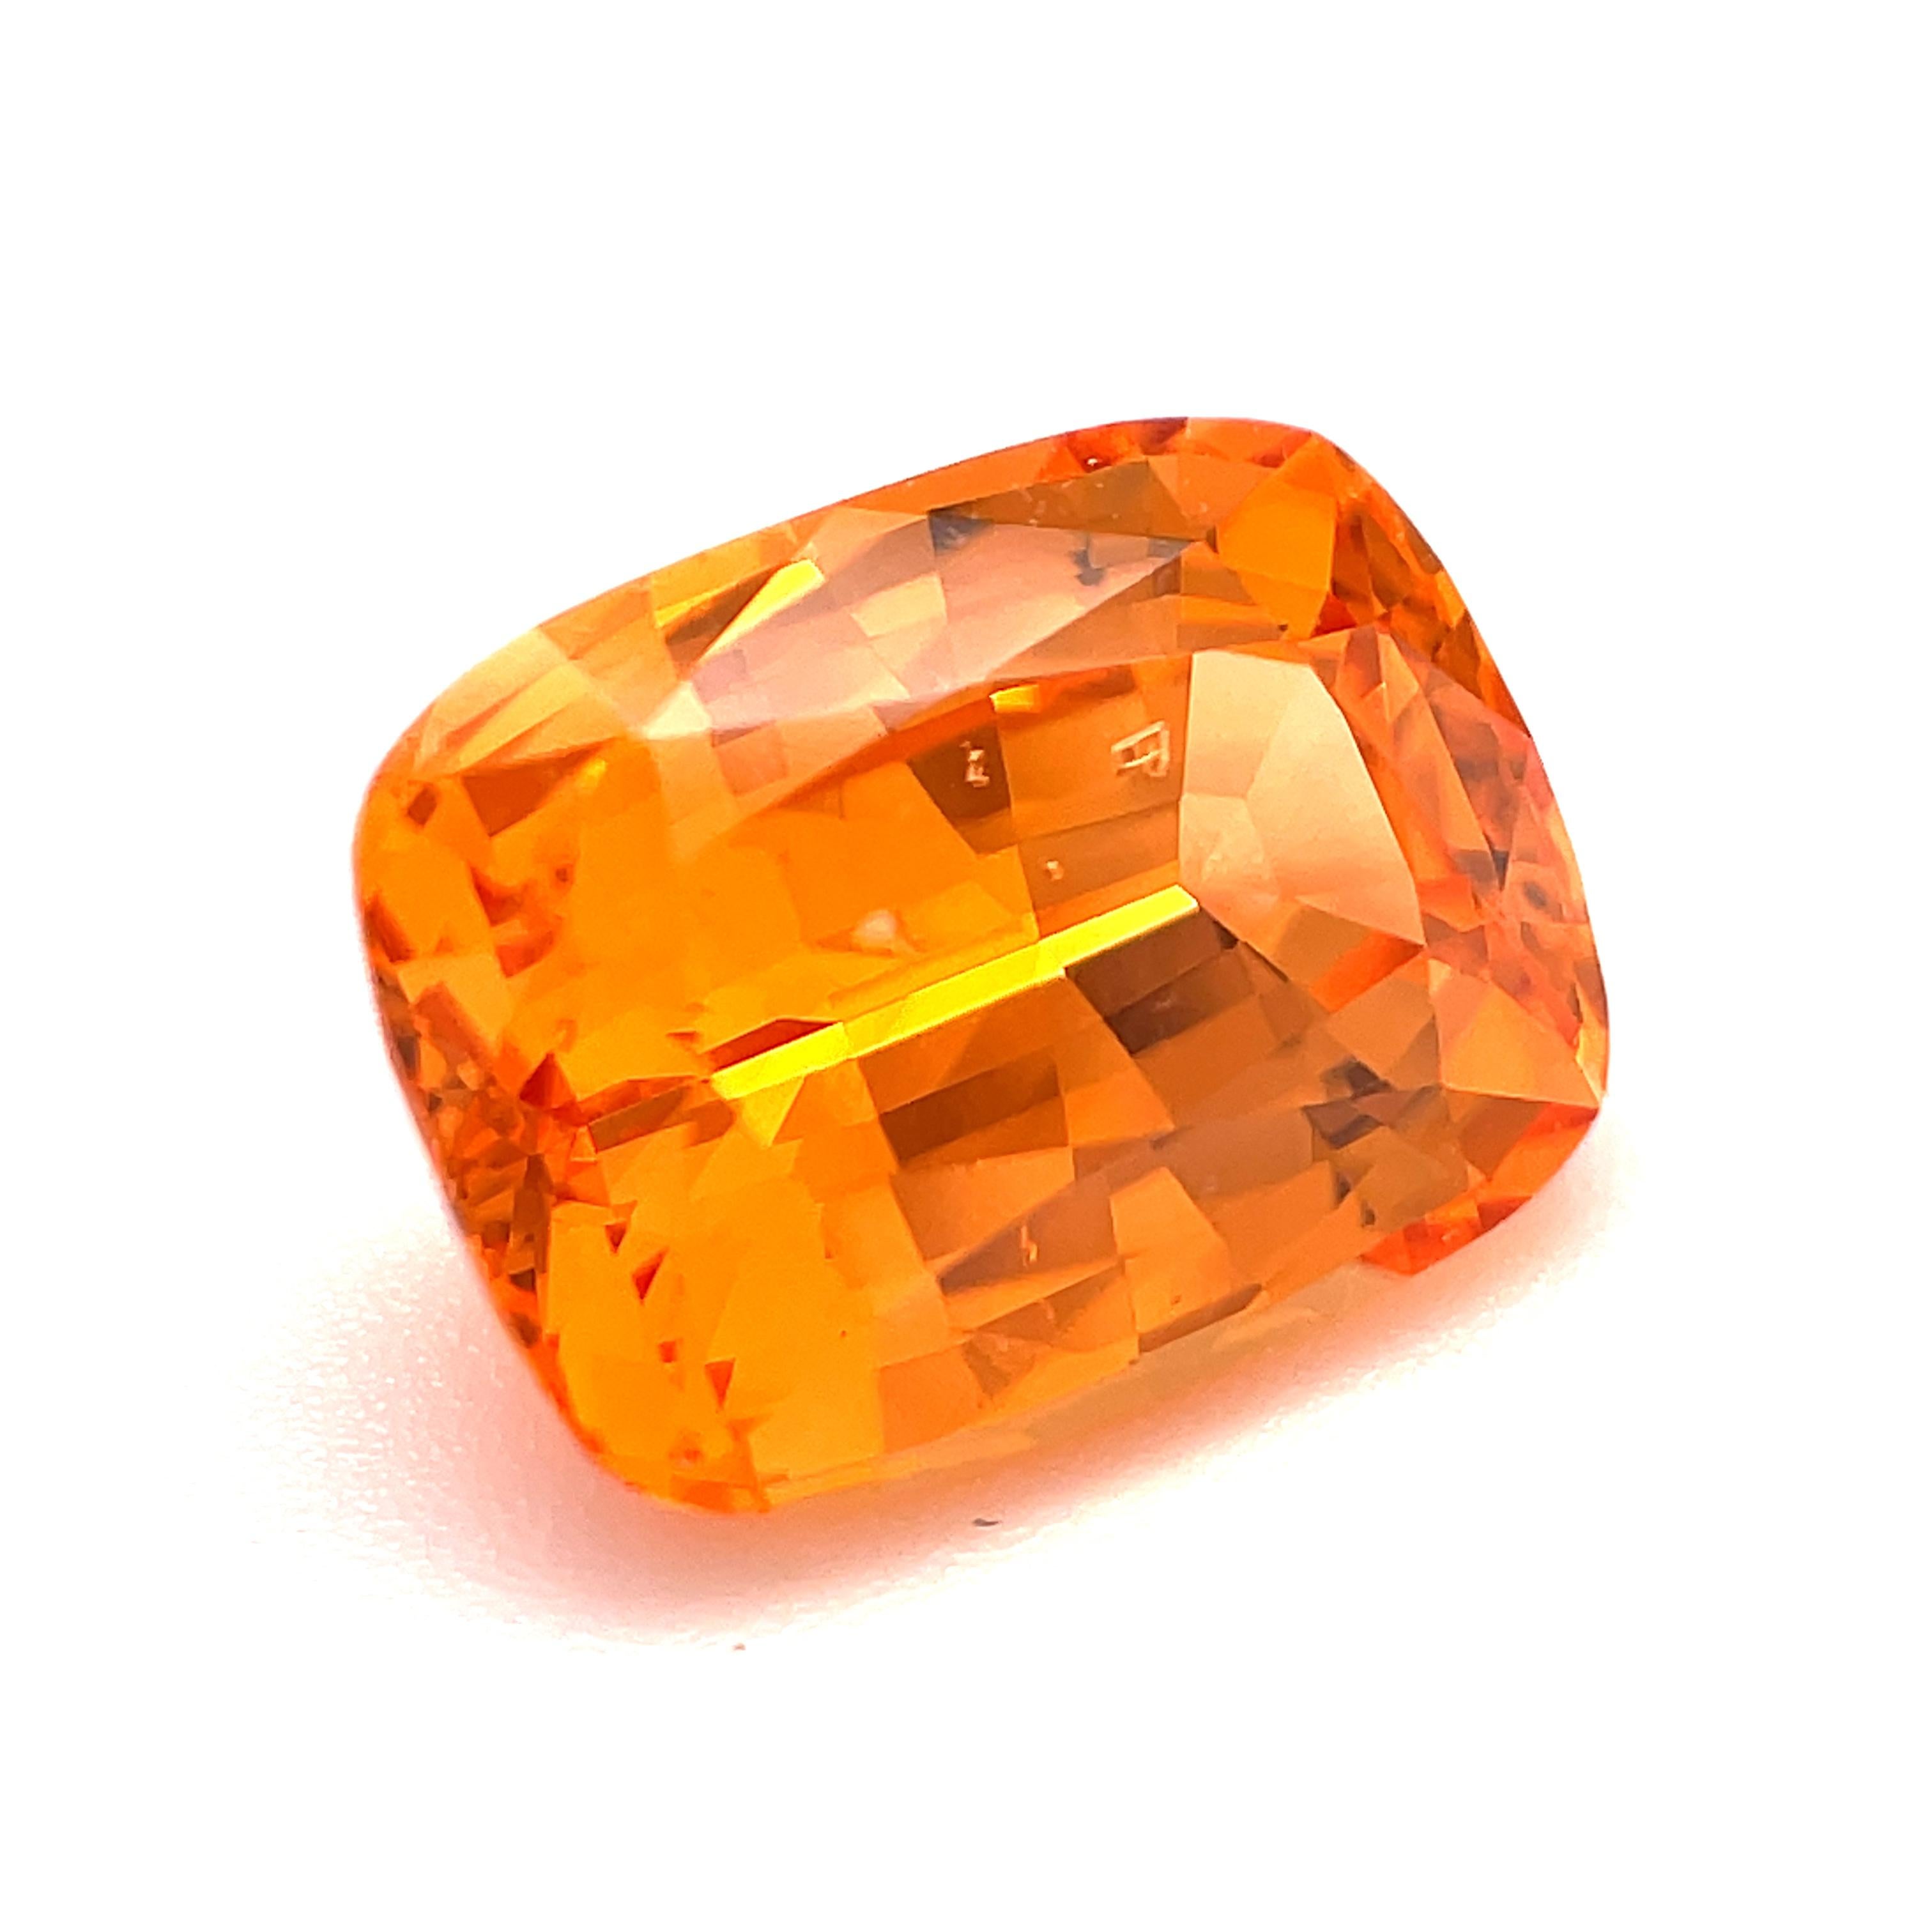 Artisan Loose Spessartite Mandarin Garnet, 4.51 Carat Unset Ring or Pendant Gemstone For Sale